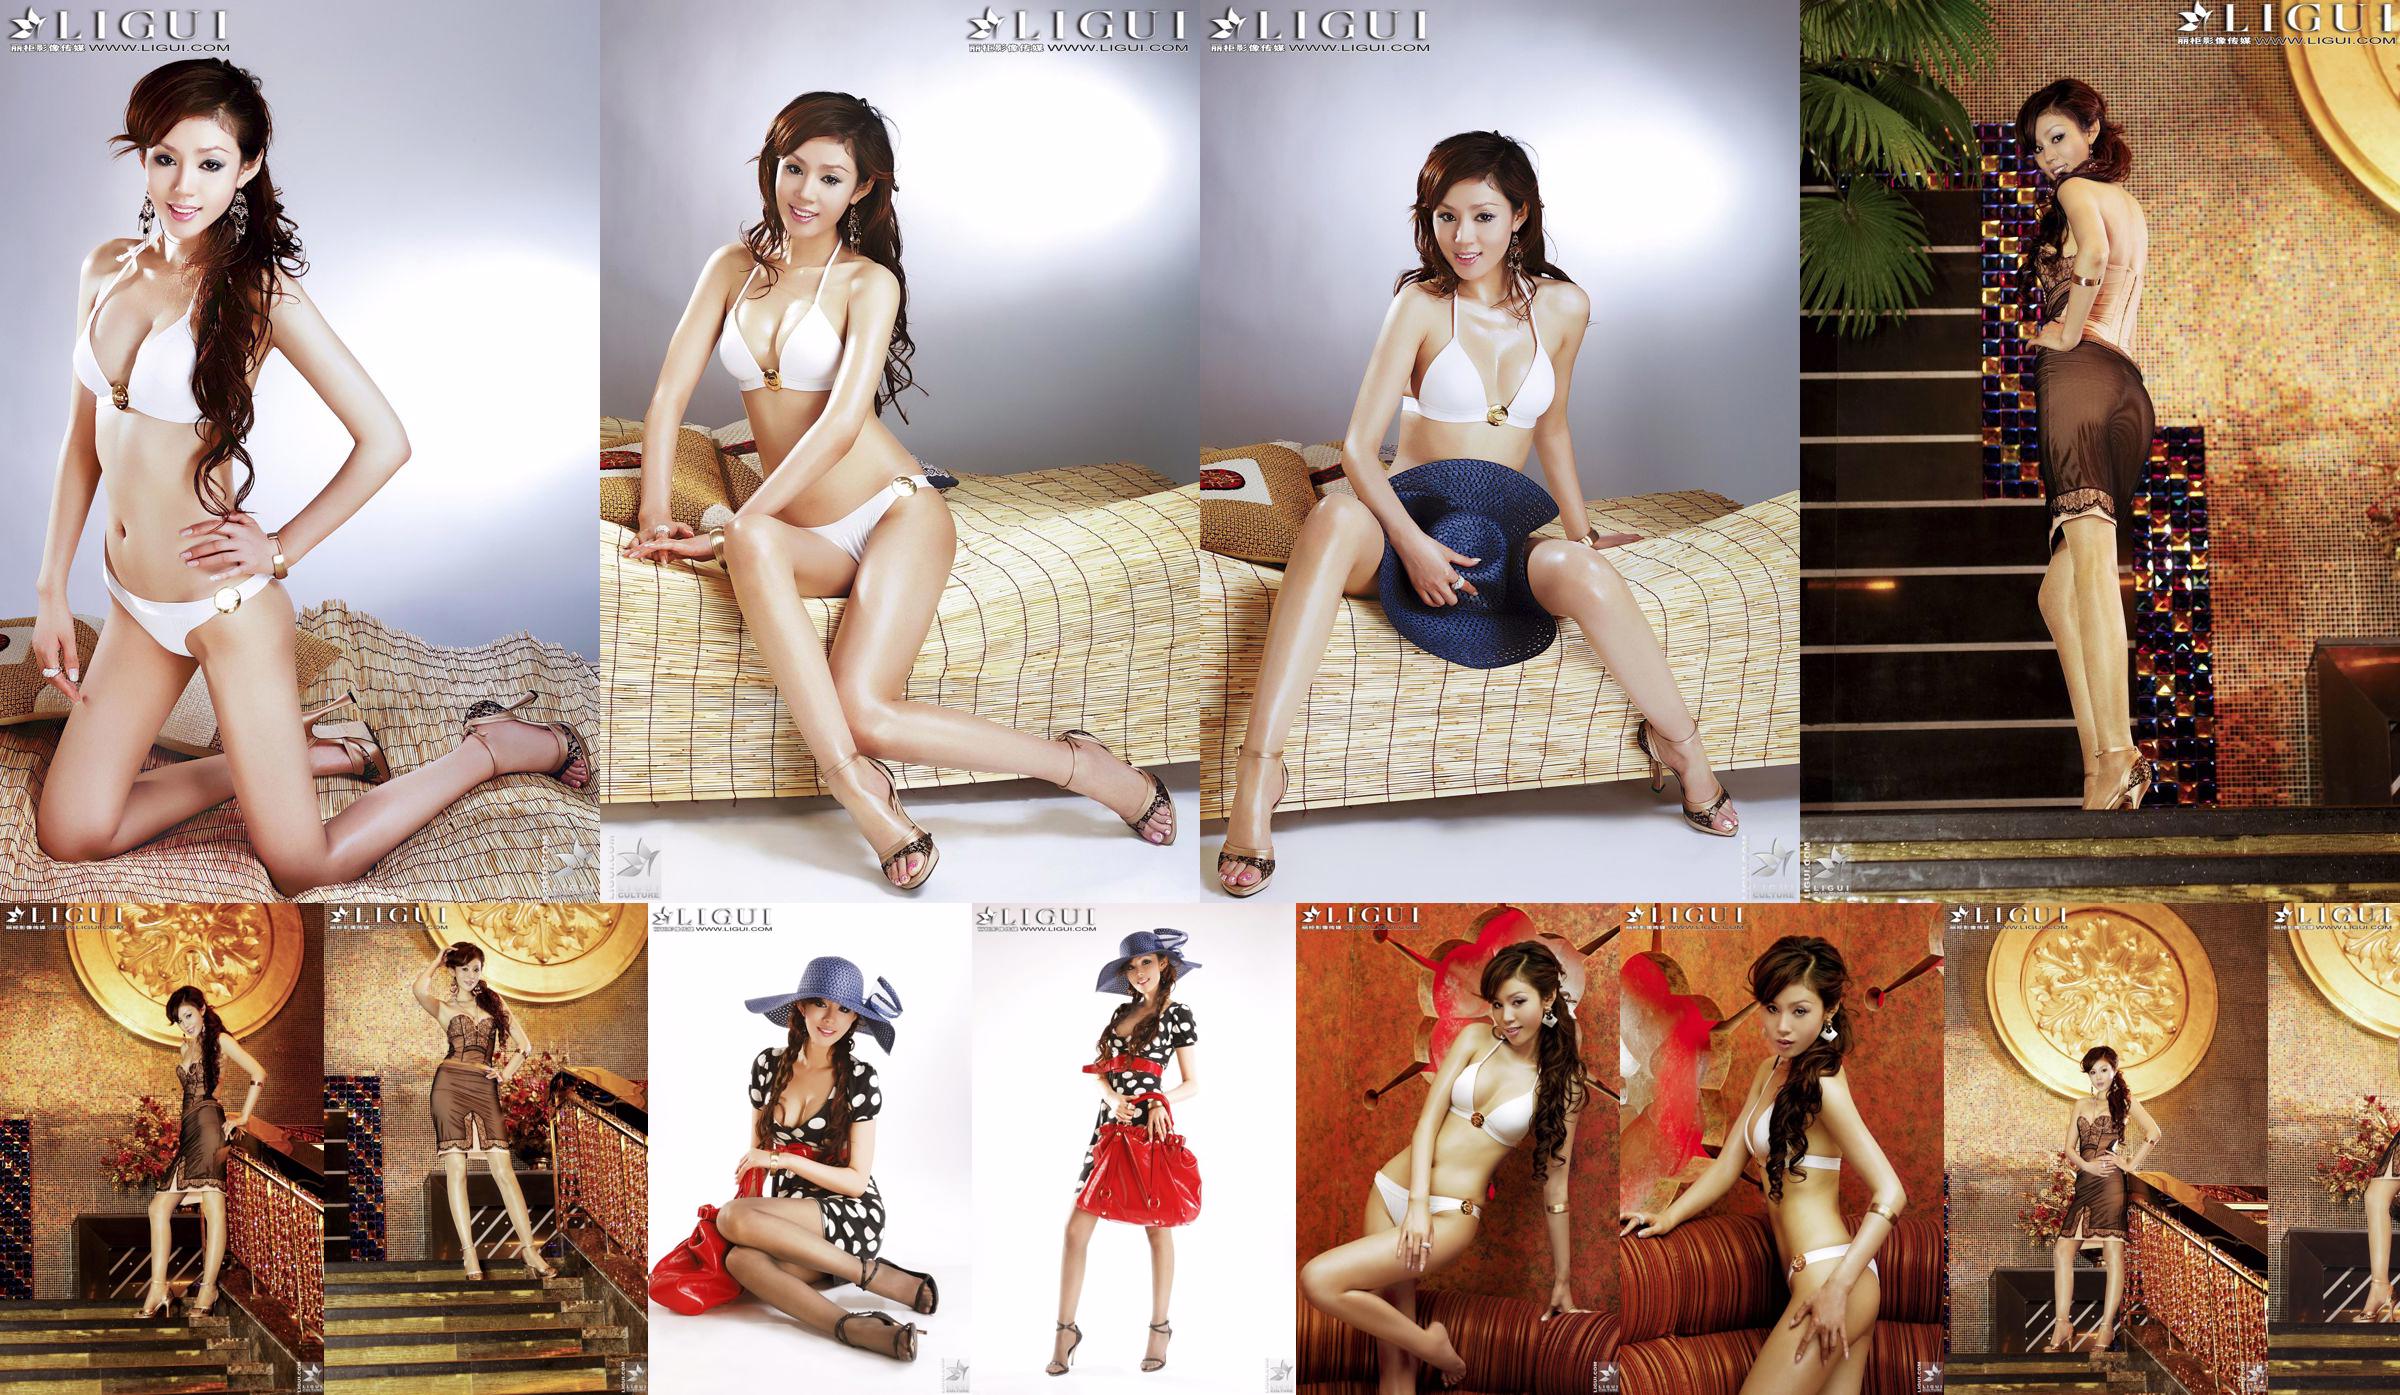 [丽 柜 LiGui] Model Yao Jinjins "Bikini + Kleid" Schöne Beine und seidige Füße Foto Bild No.77b80a Seite 1